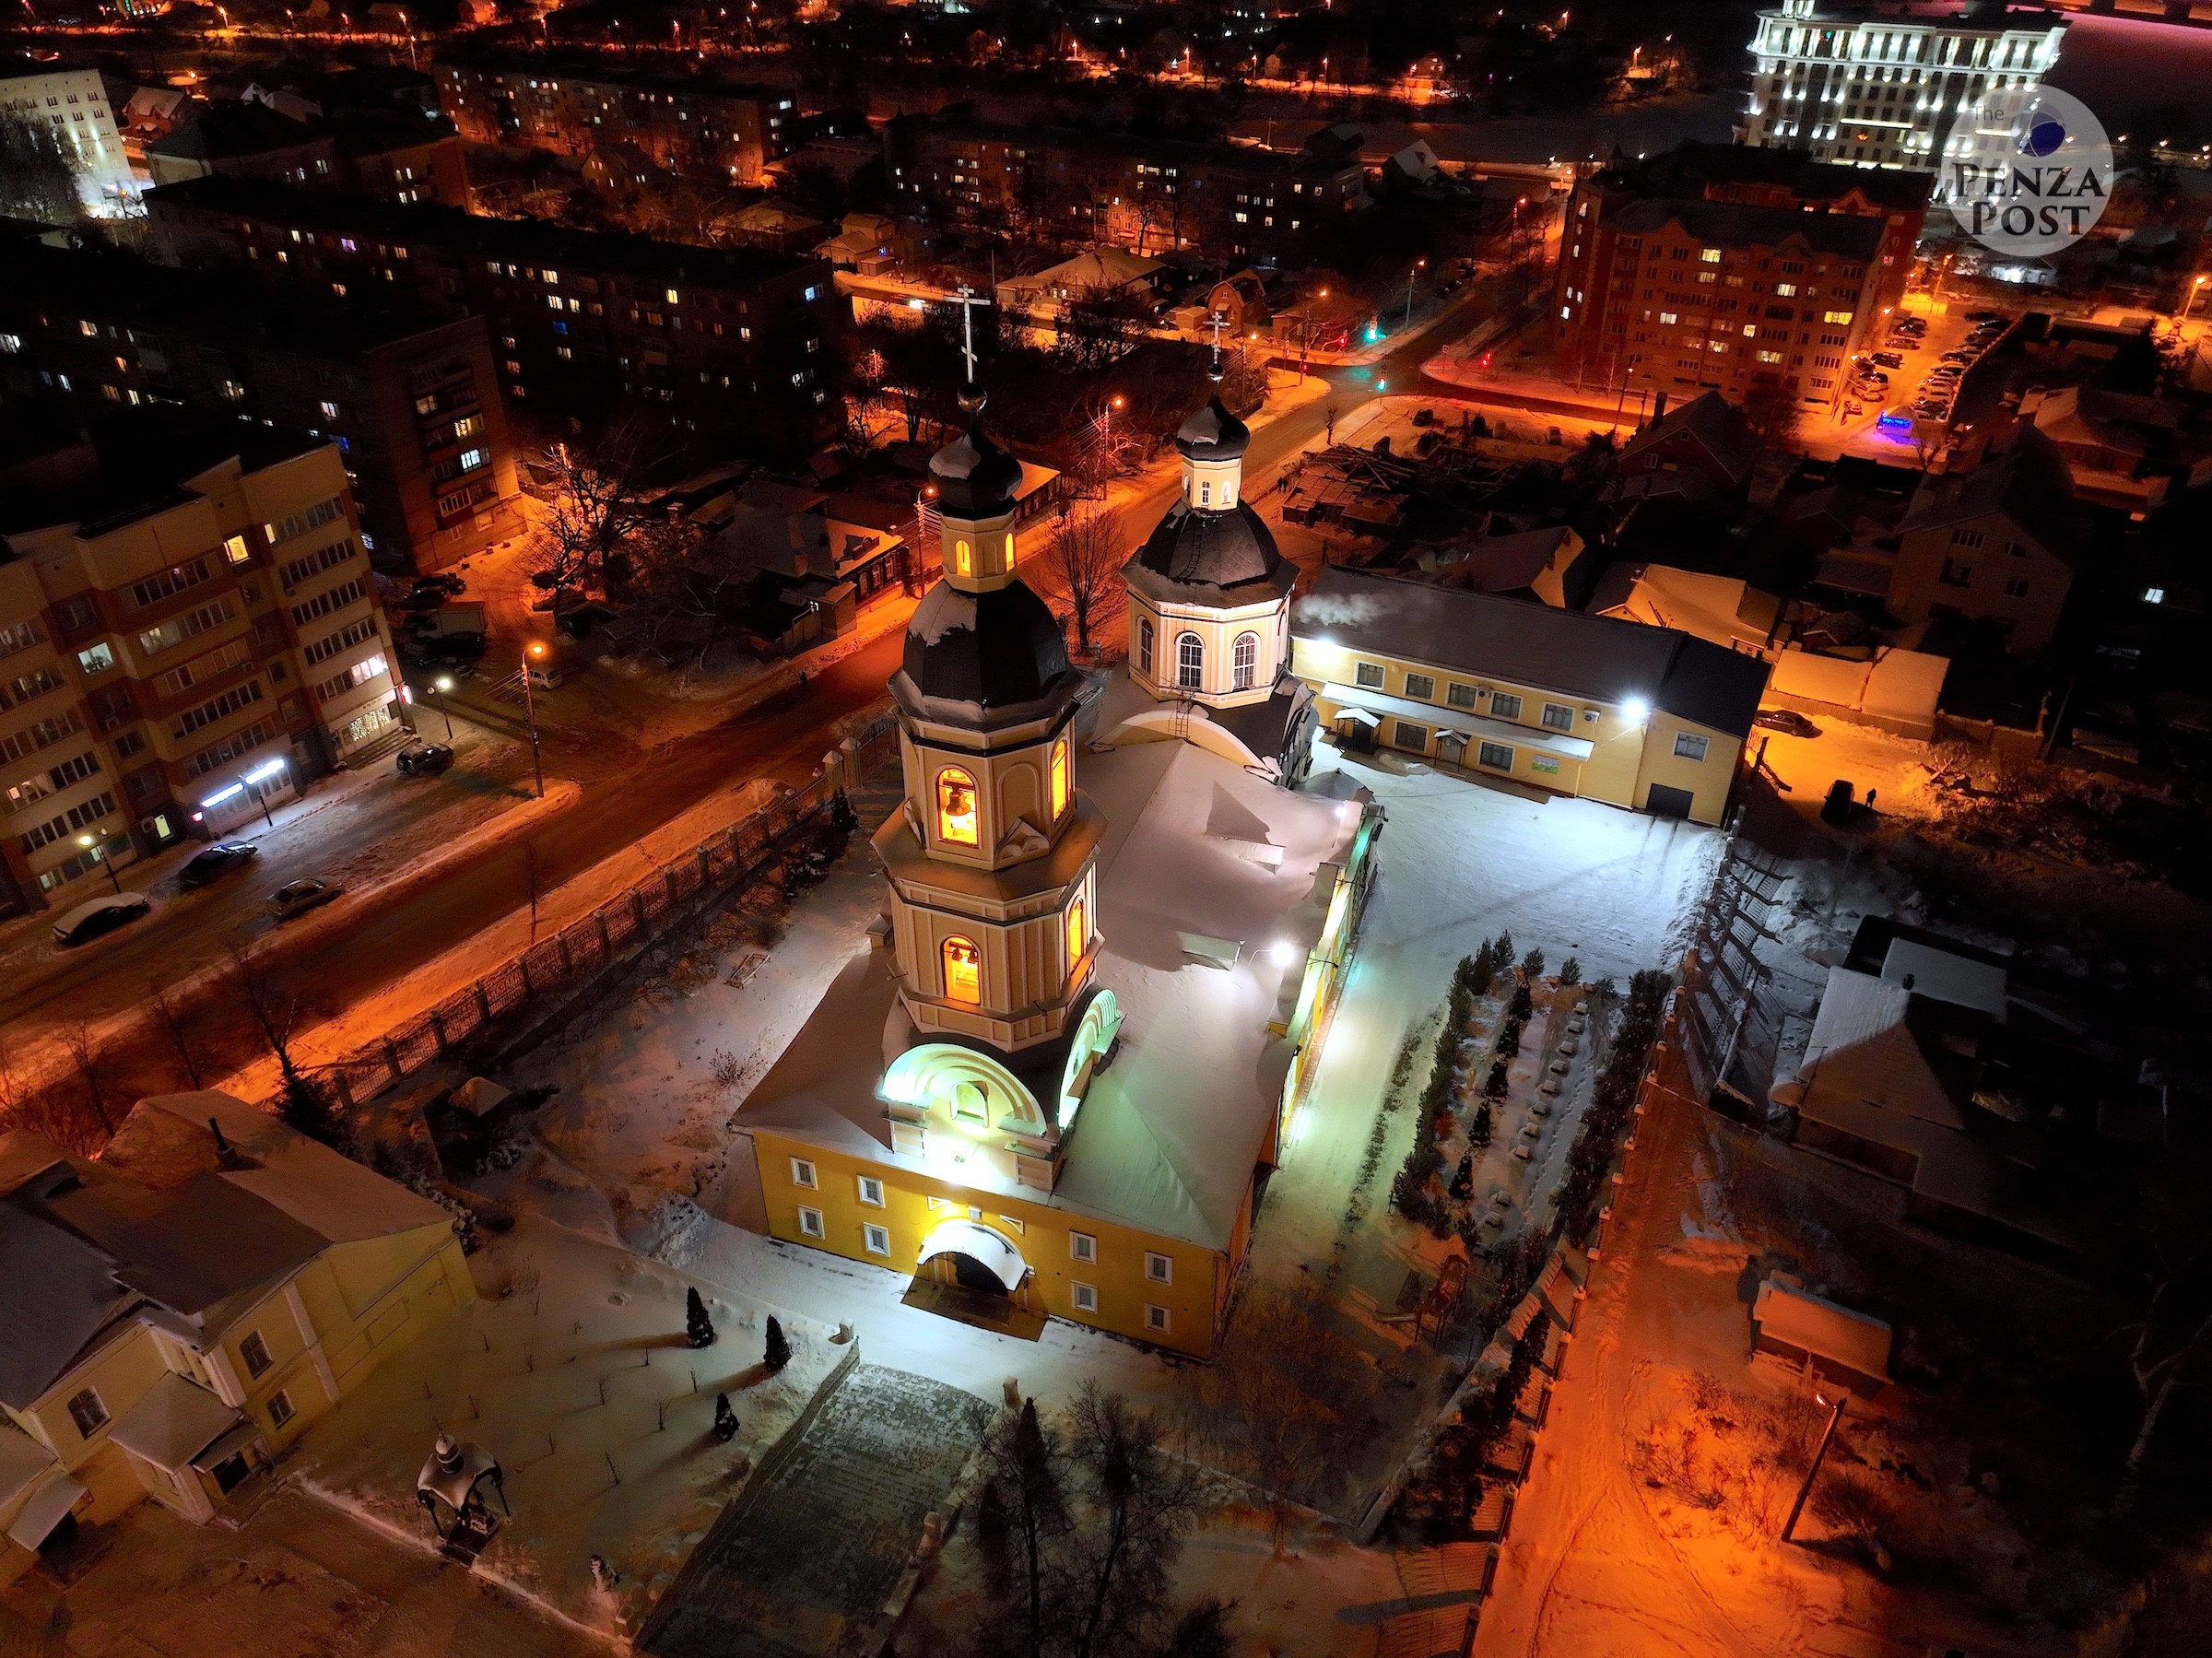 Прогулки по ночной Пензе перед Рождеством. Покровский архиерейский собор - аэрофотография от The Penza Post